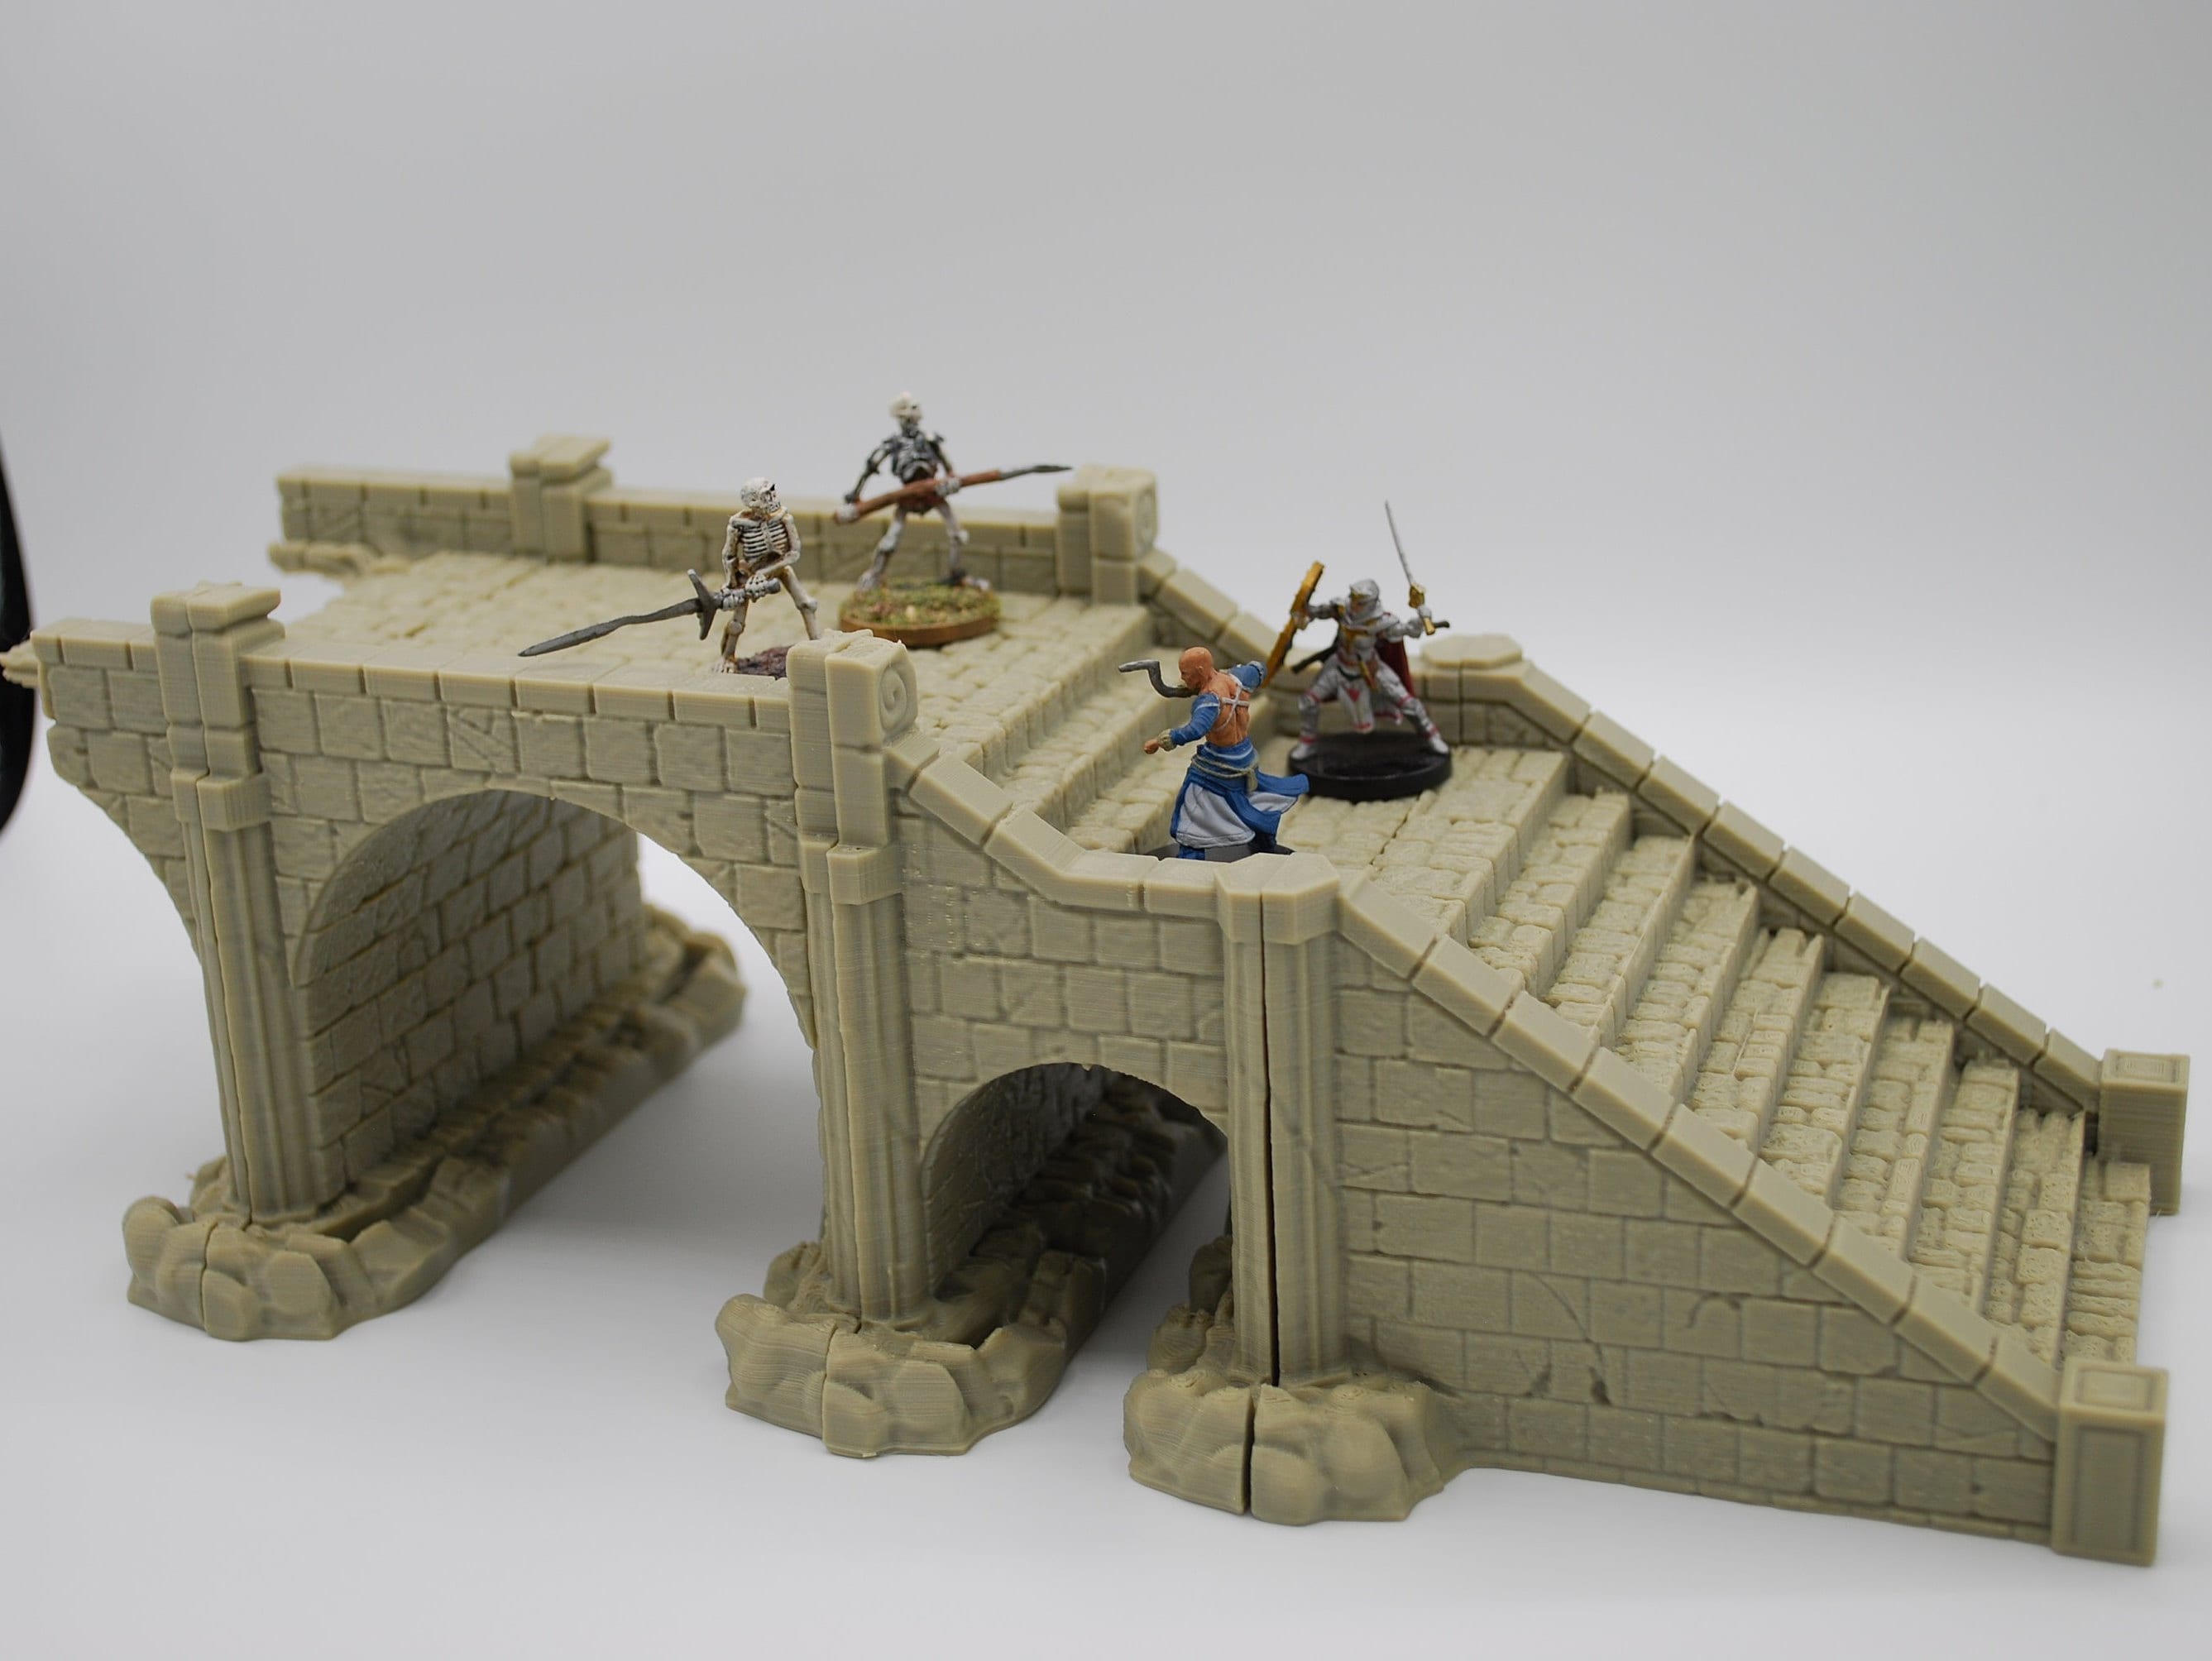 Stormguard - Ruined Bridge / 28mm Wargame / RPG 3d Printed Tabletop Terrain / RPG / Frostgrave / Age of Sigmar /